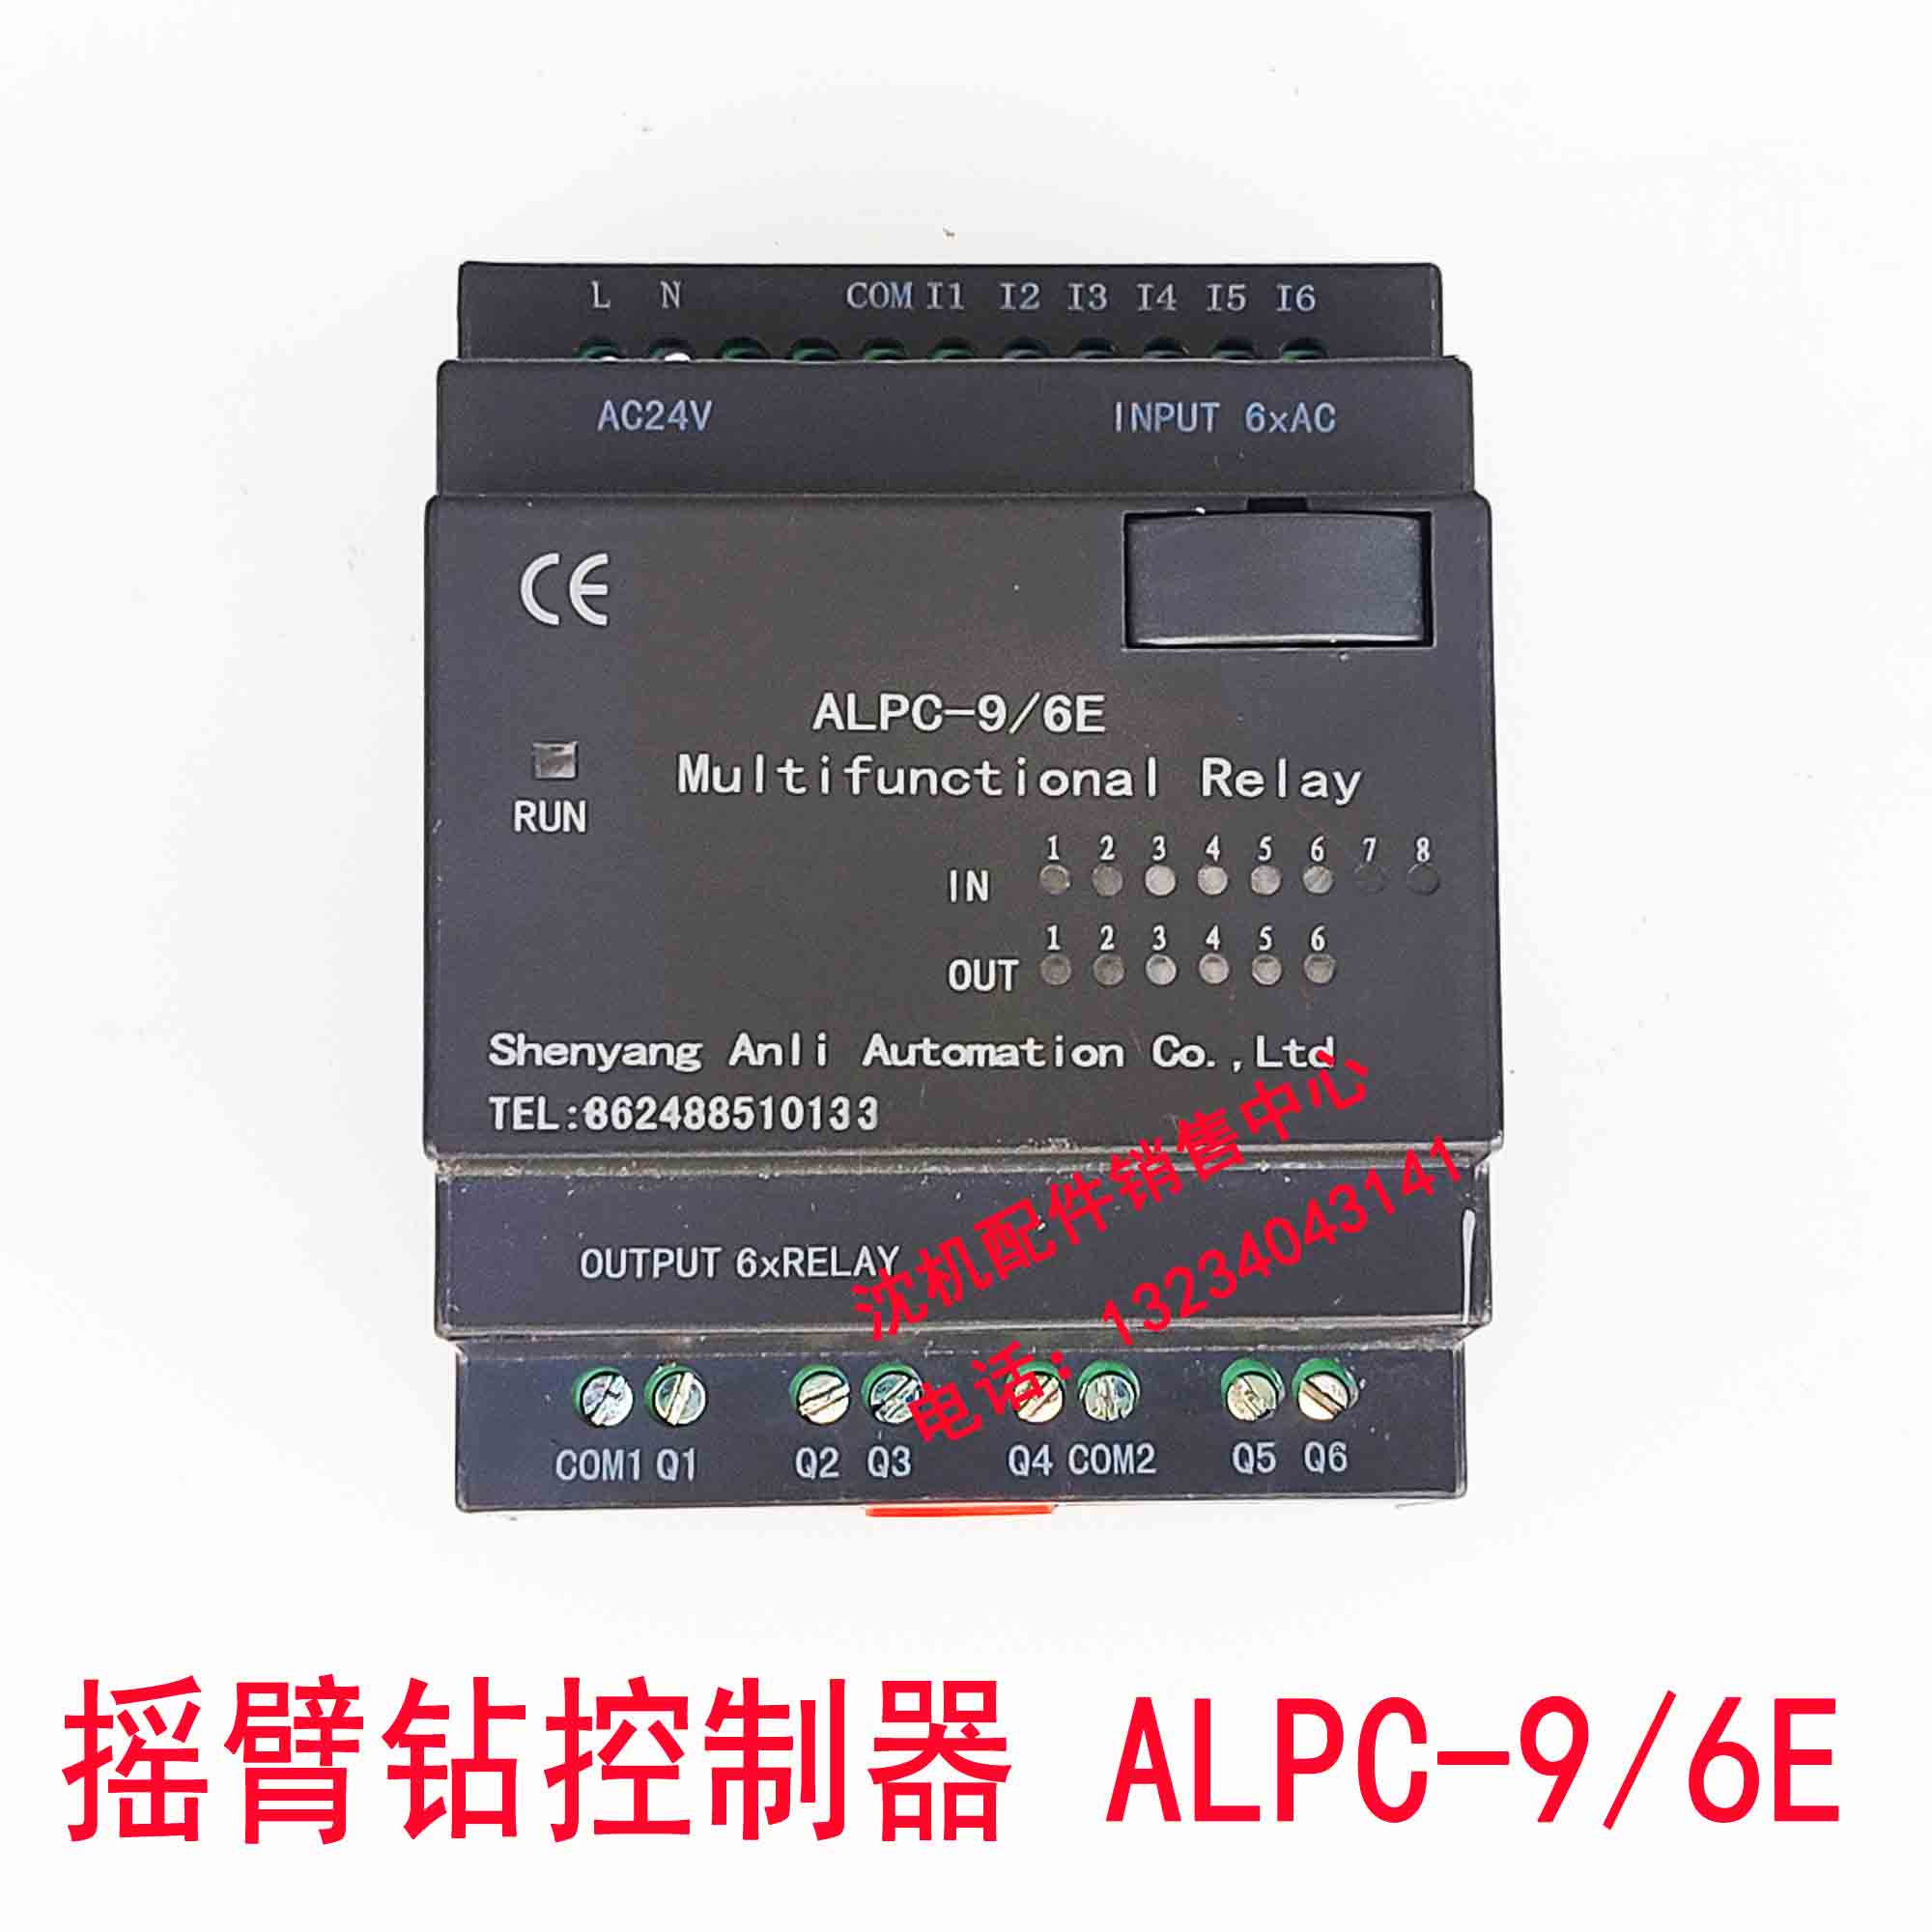 中捷摇臂钻ALPC-9/6E可编程控制器 PLC模块轻摇QYPC-3/4RCO控制器-图1